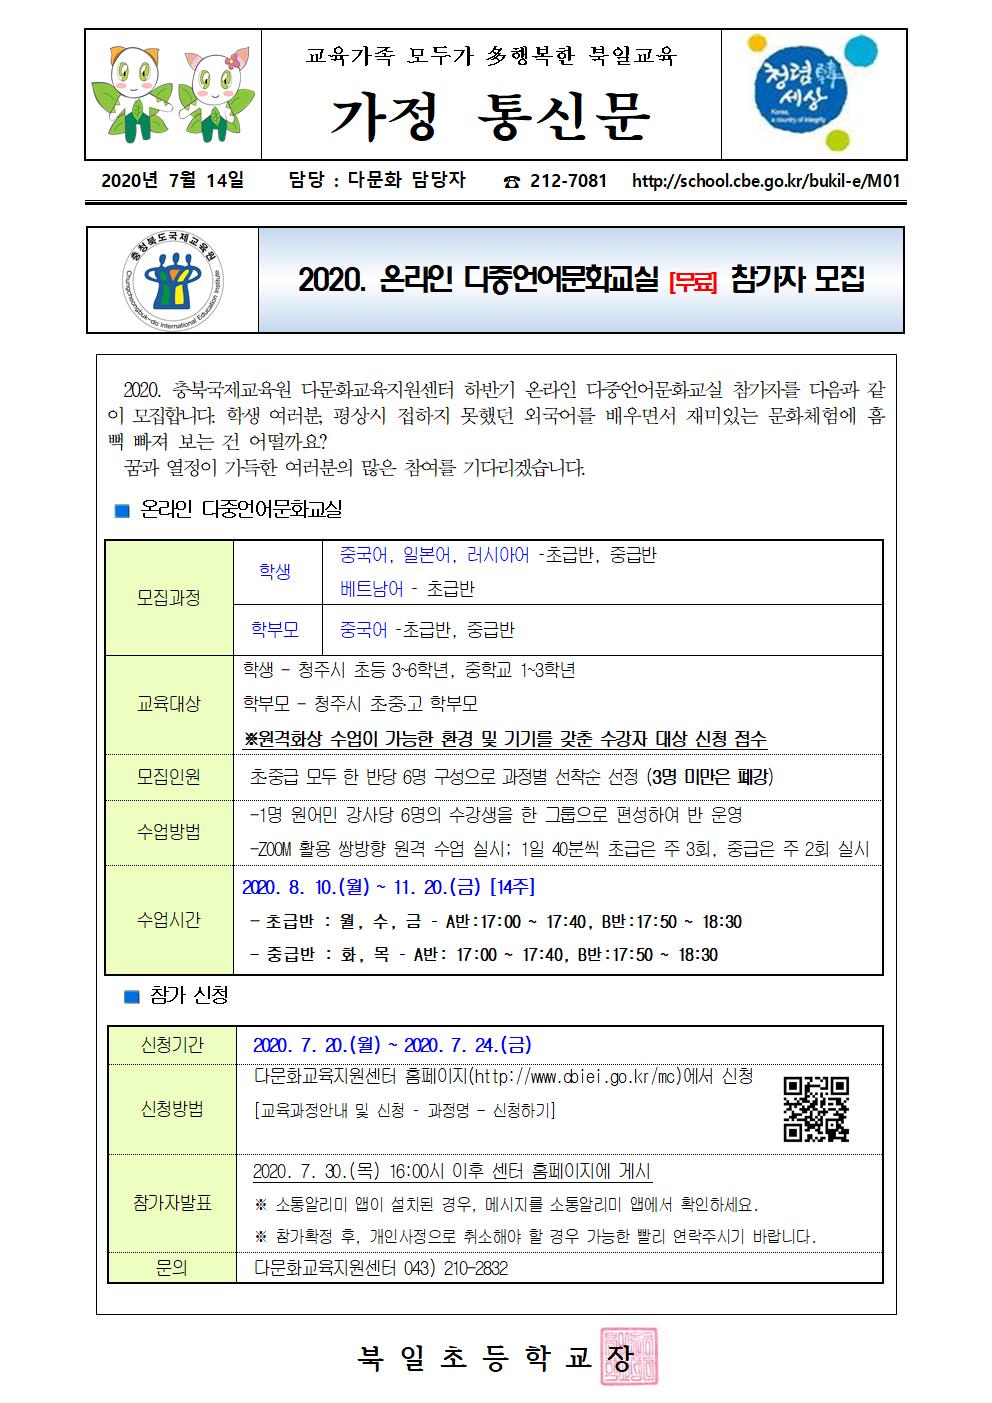 2020. 온라인 다중언어문화교실 가정통신문001